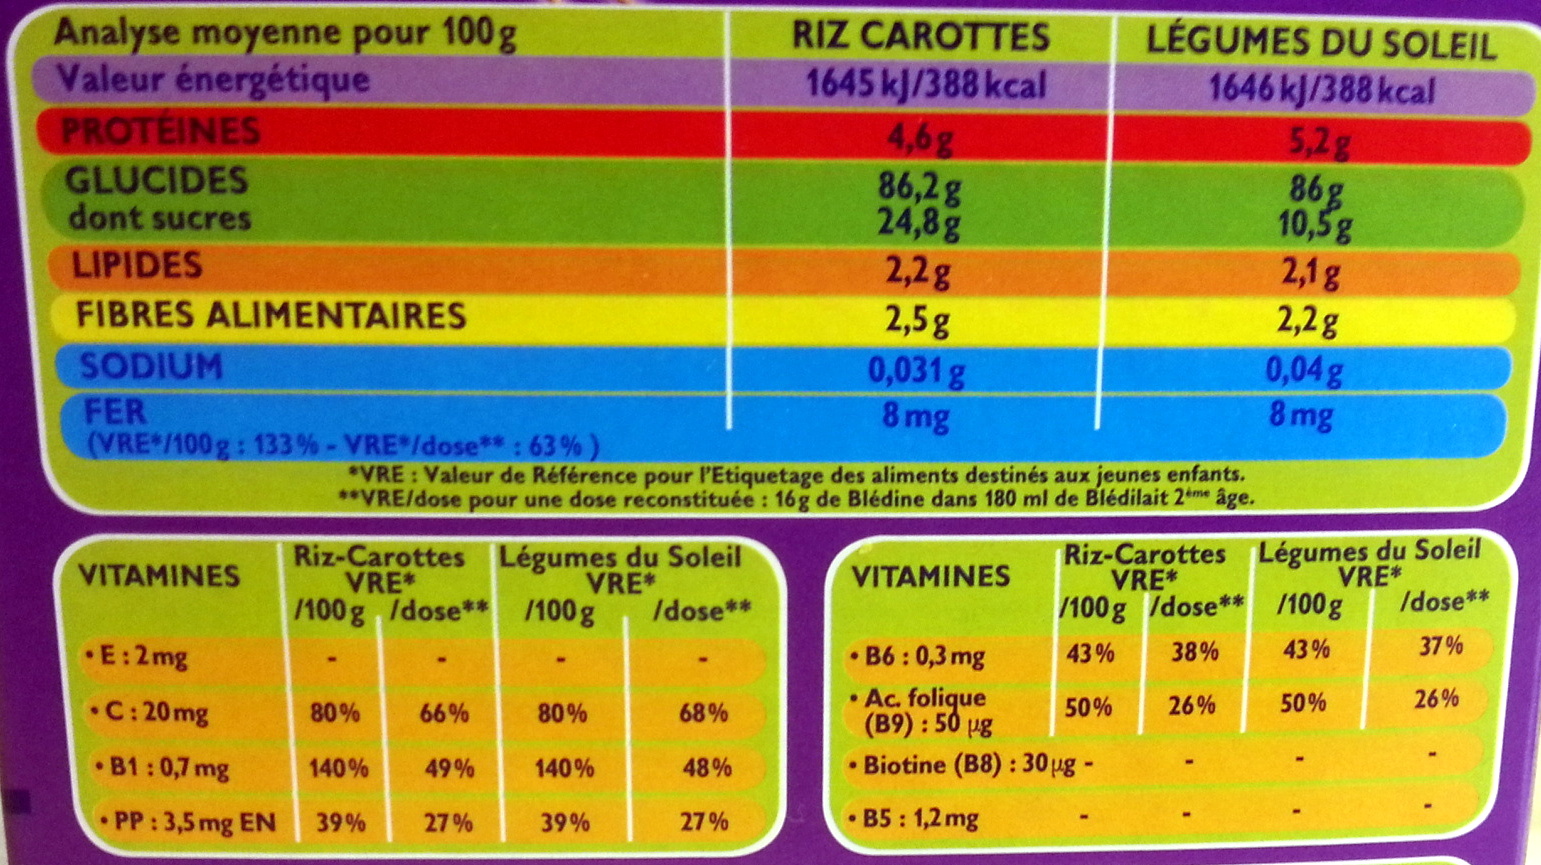 Blédîner - Légumes du soleil / riz-carottes - حقائق غذائية - fr